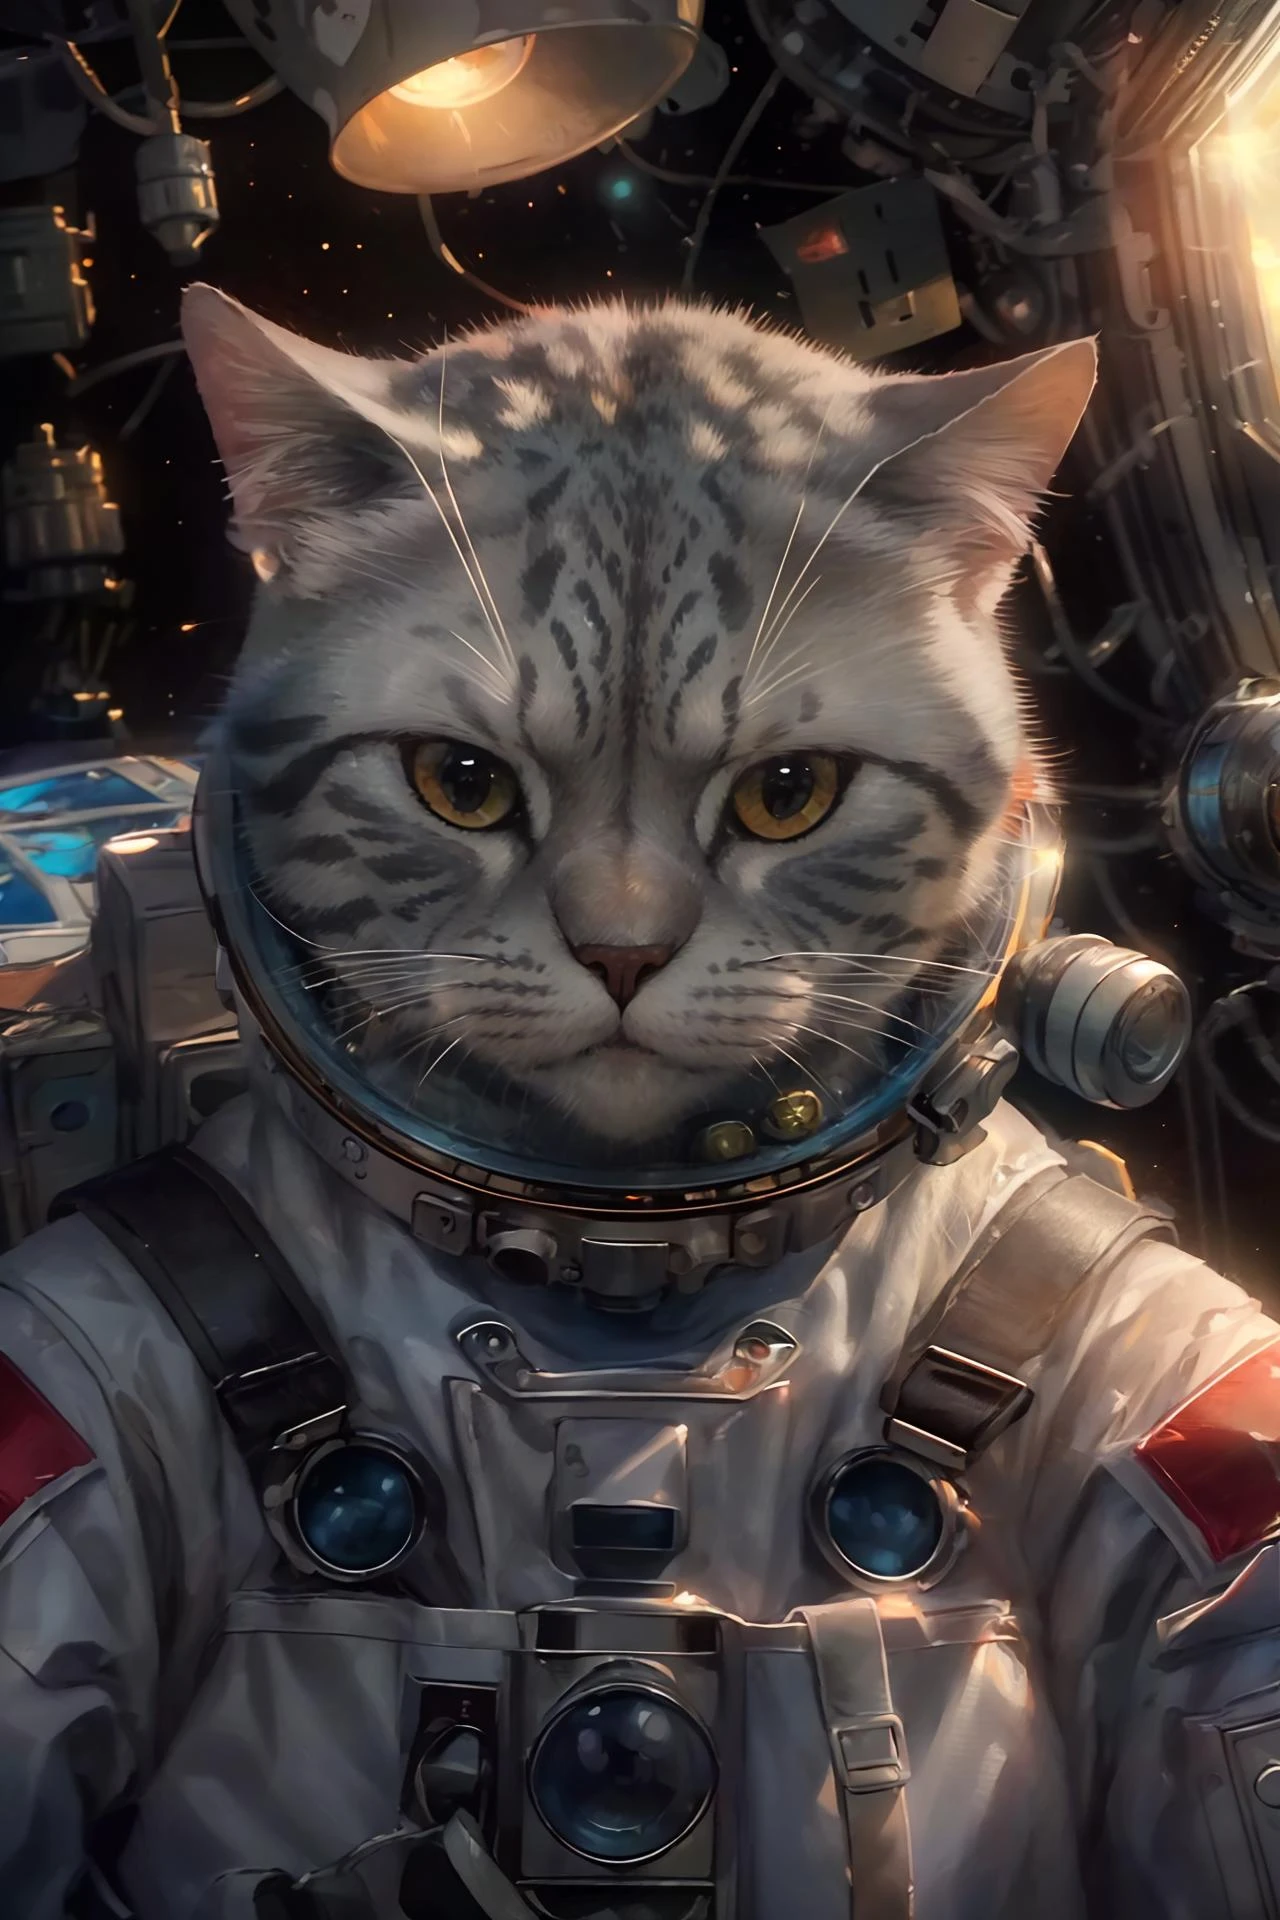 ((mejor calidad)),((Obra maestra)),(detallado),(Realista:1.4),resolución ultra alta,Highly detallado,(foto en bruto:1.2),(photoRealista:1.4),detalle excepcional,iluminación dramática,alta resolución,8k,absurdos,1 gato,meloncat,((casco espacial)),astronaut,gato volador,universo,extraterrestres,nave espacial extraterrestre,luz de la nave espacial sobre el gato,mano pov,tierra,enfoque animal,animal,no humanos,Realista,mirando al espectador,